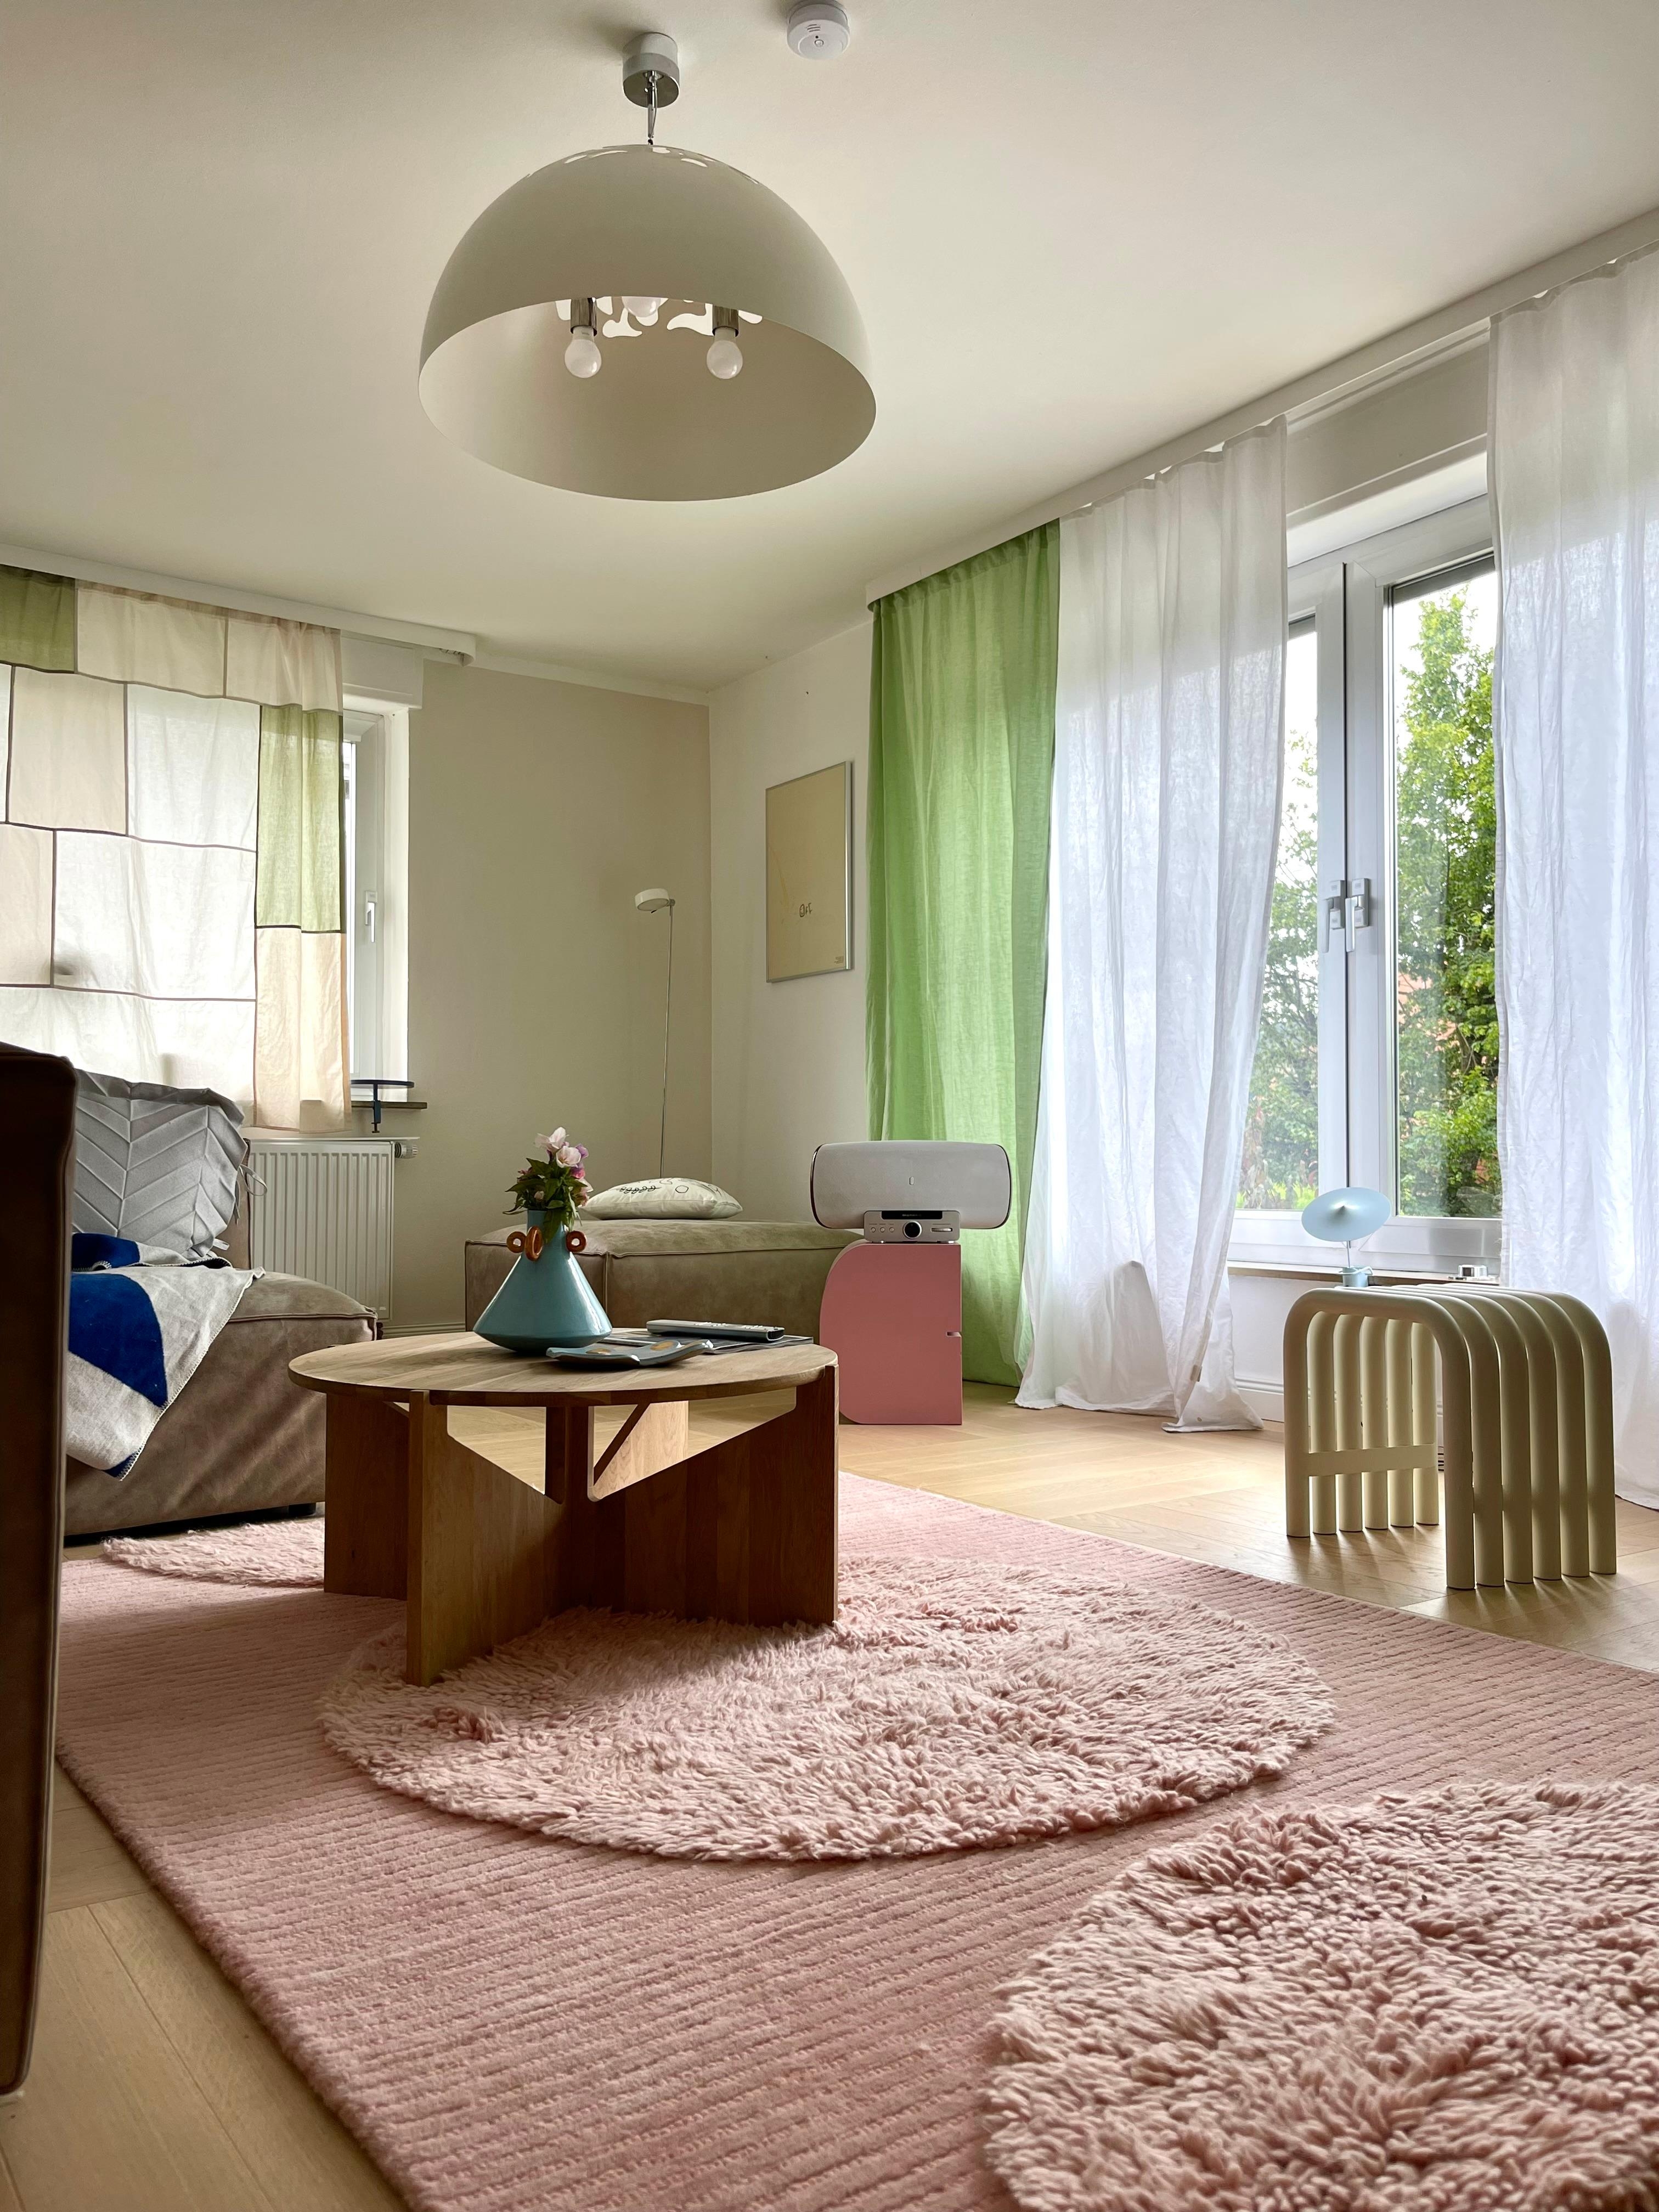 #living#home#interior#interiør#altbauliebe#wohnen#scsndinavisch#couchstyle#wohnzimmer#lampe#cozy#deko#home#living